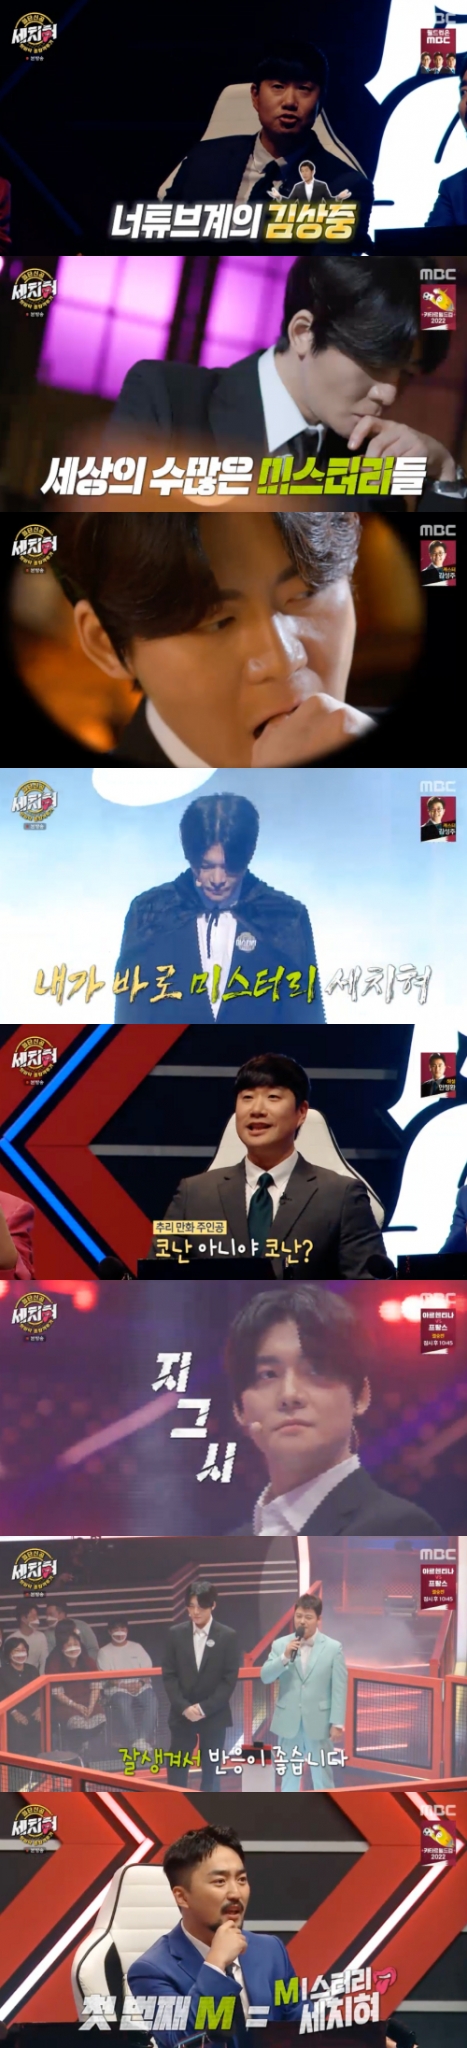 /사진=MBC 신규 파일럿 예능프로그램 '혓바닥 종합격투기 세치혀'(이하 '세치혀') 방송 화면 캡쳐